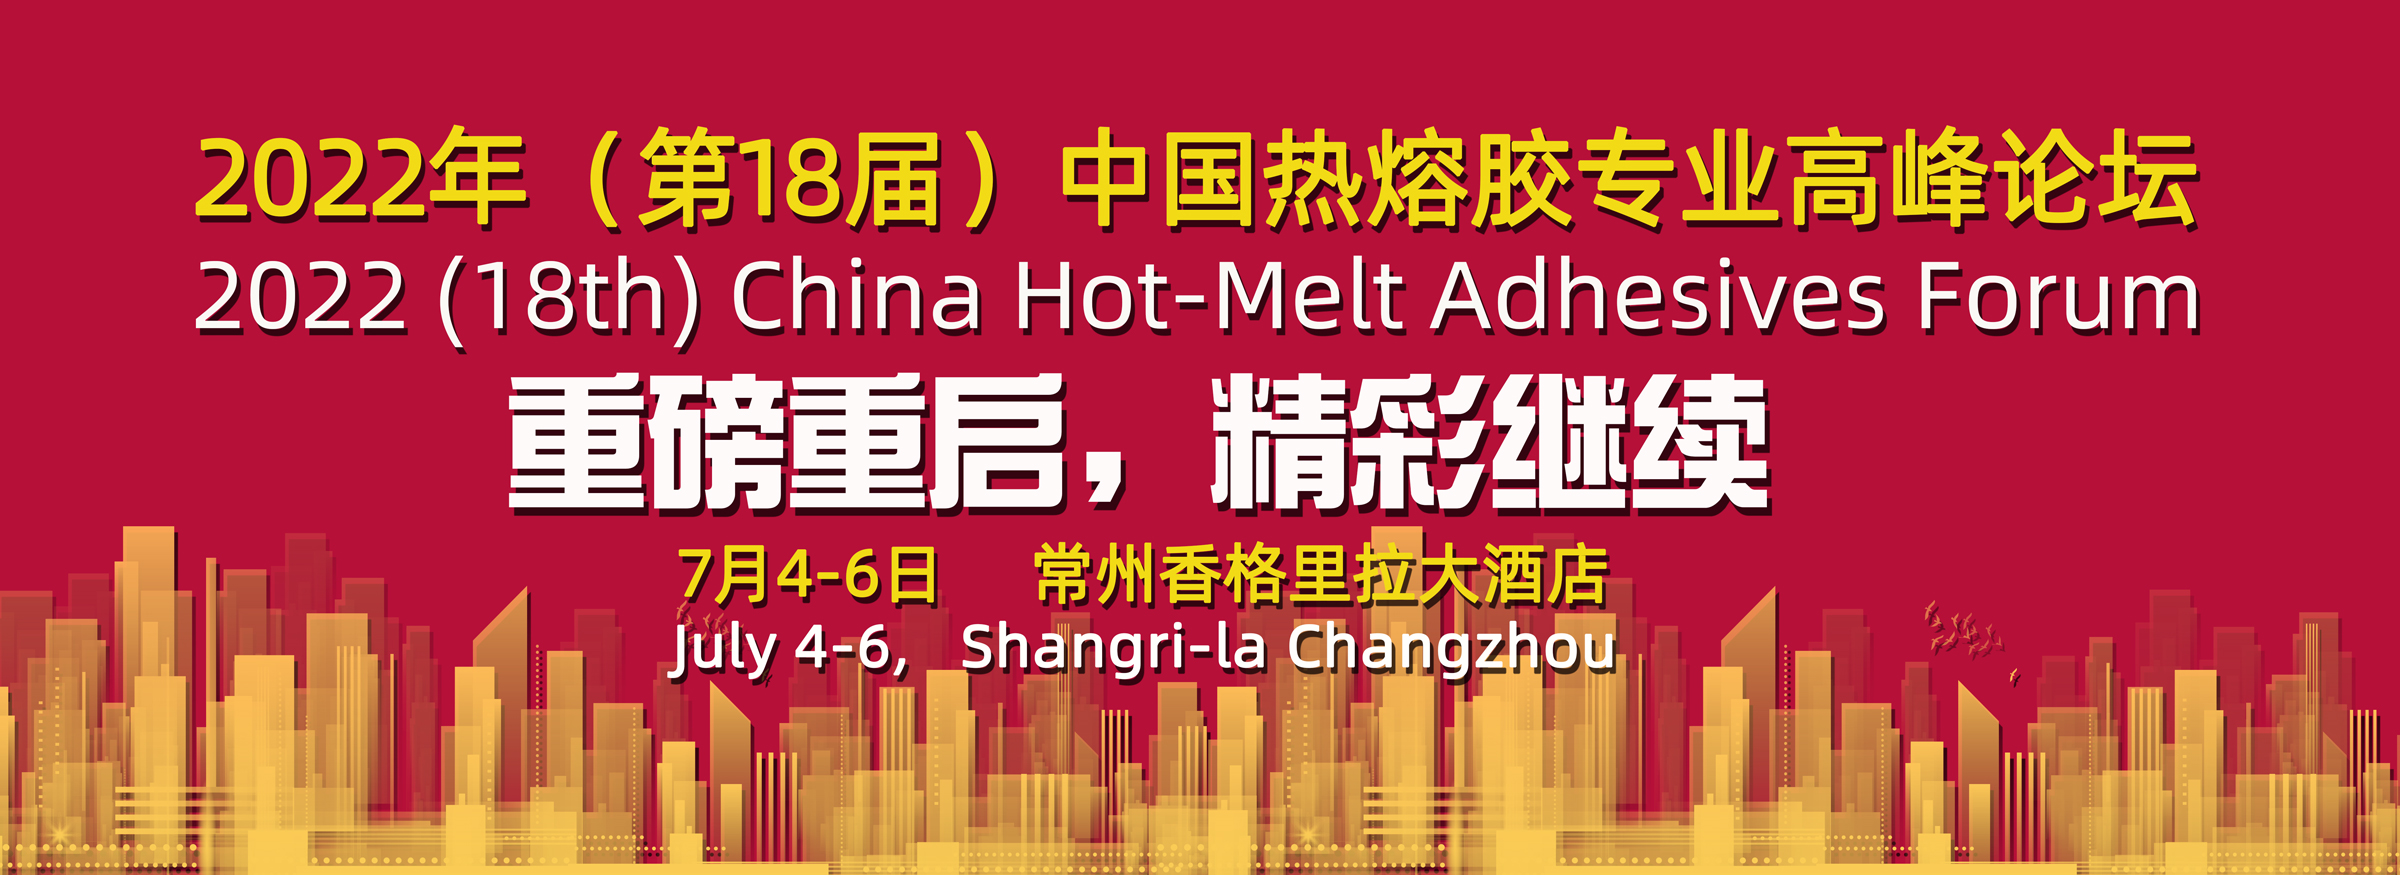 关于2022年(第18届)中国热熔胶专业高峰论坛重新启动的通知